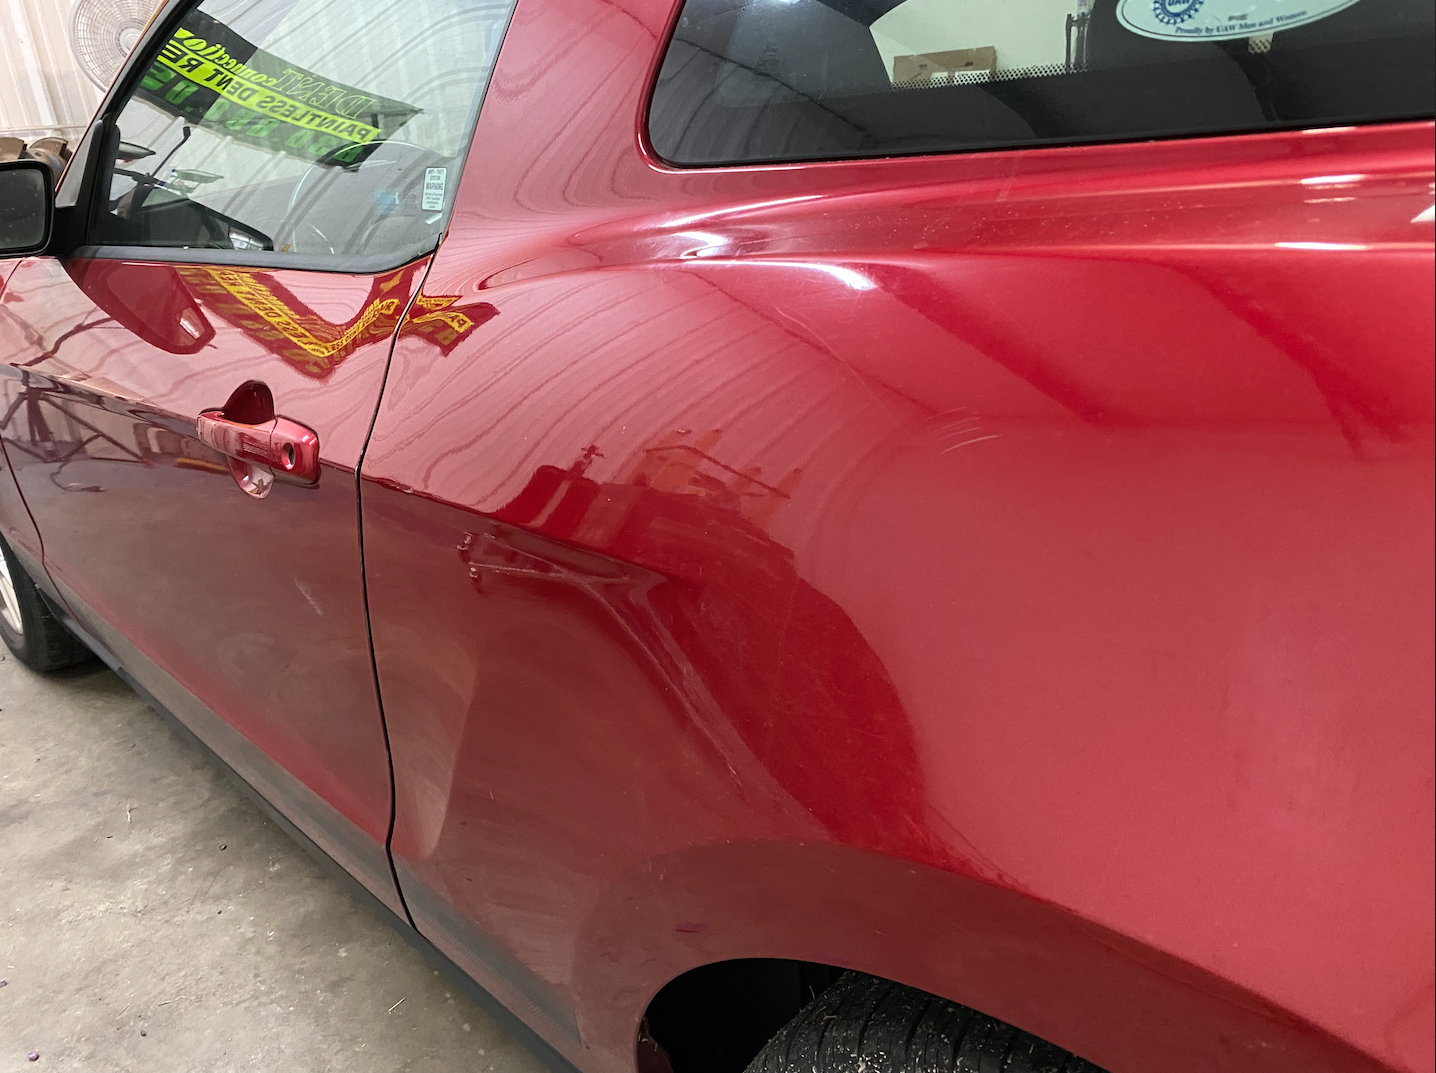 Red Ford Mustang dent repair